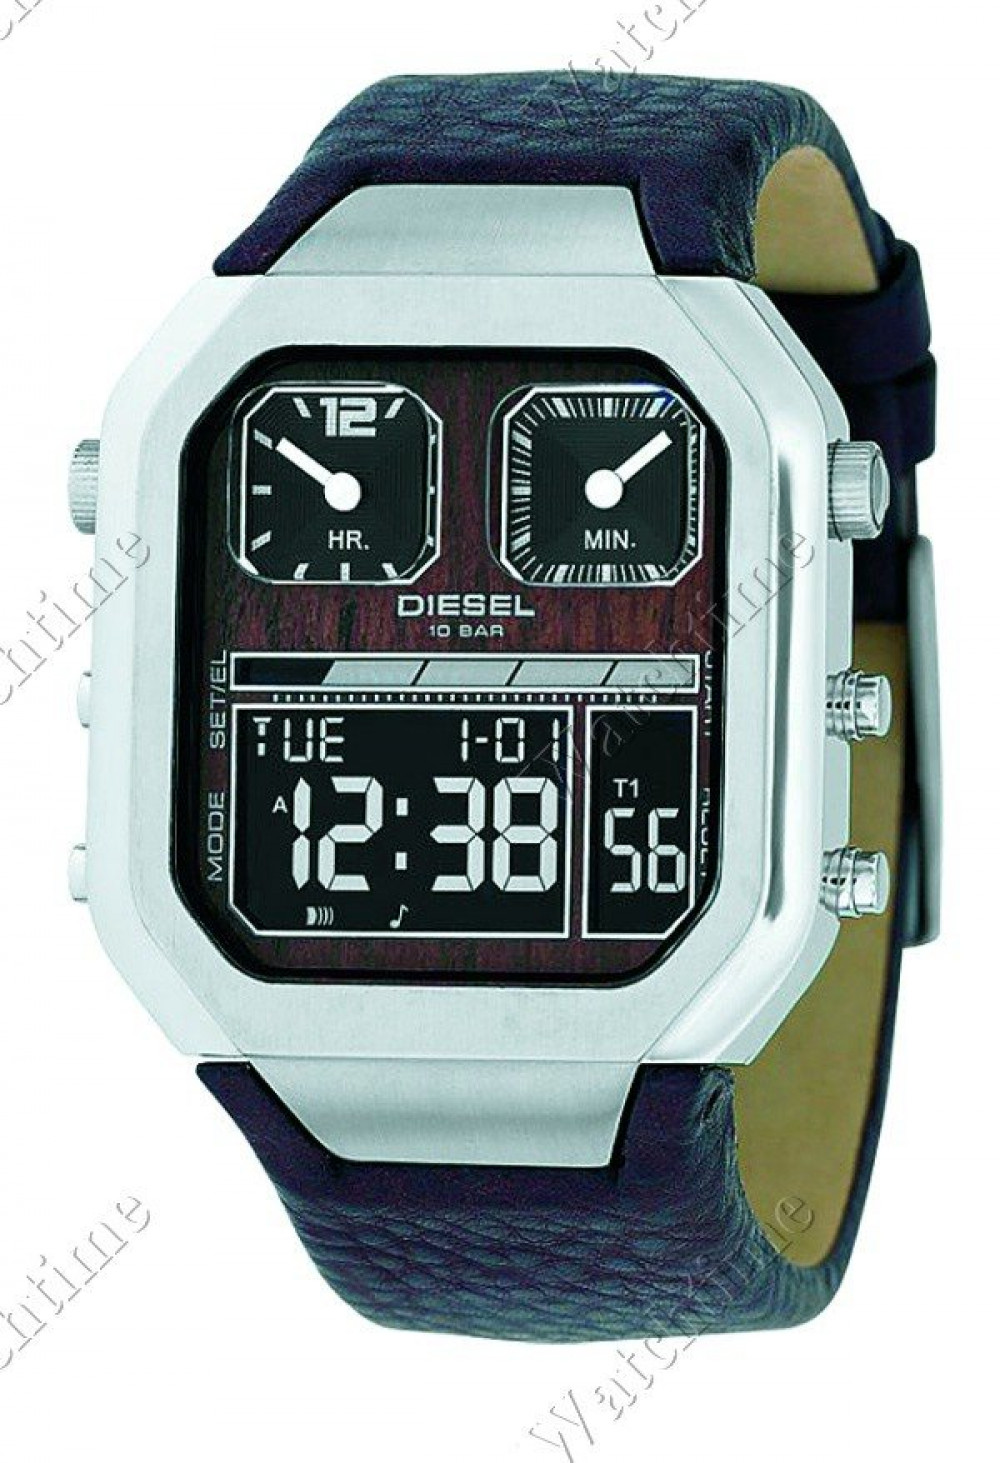 Zegarek firmy Diesel Time Frames, model DZ7064